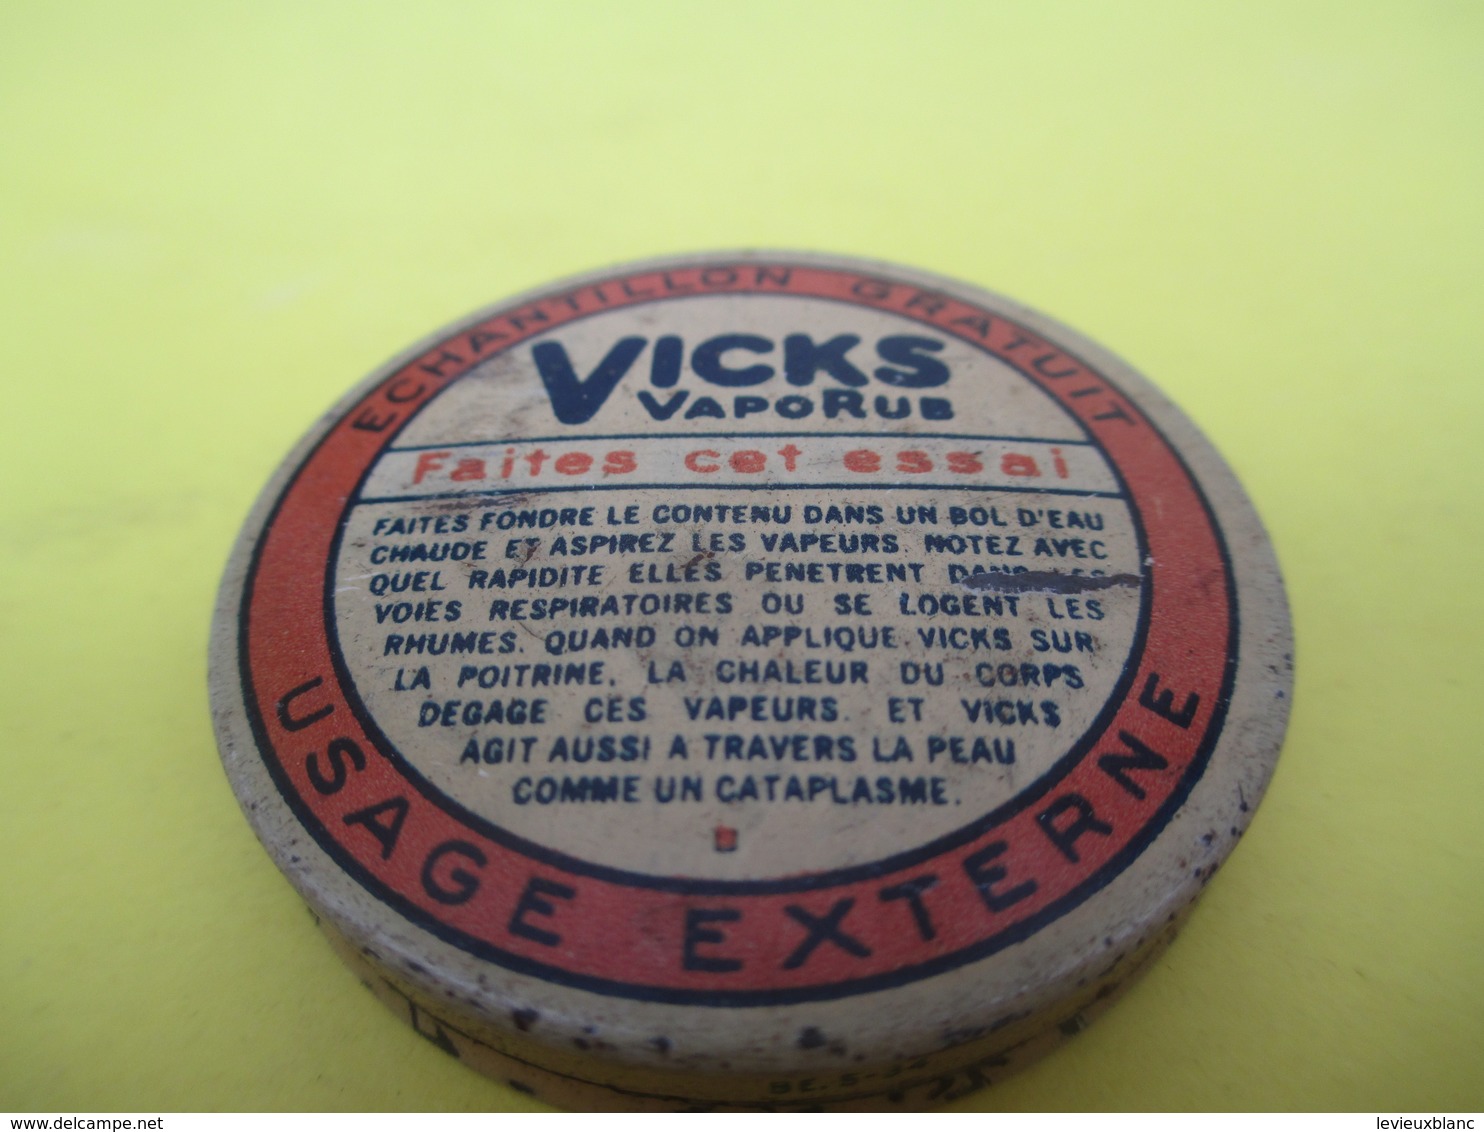 Boite Métallique Ancienne/VICKS Vaporus /échantillon Gratuit/Kosteloos Staal/Belgique//Vers 1930-1950 BFPP176 - Cajas